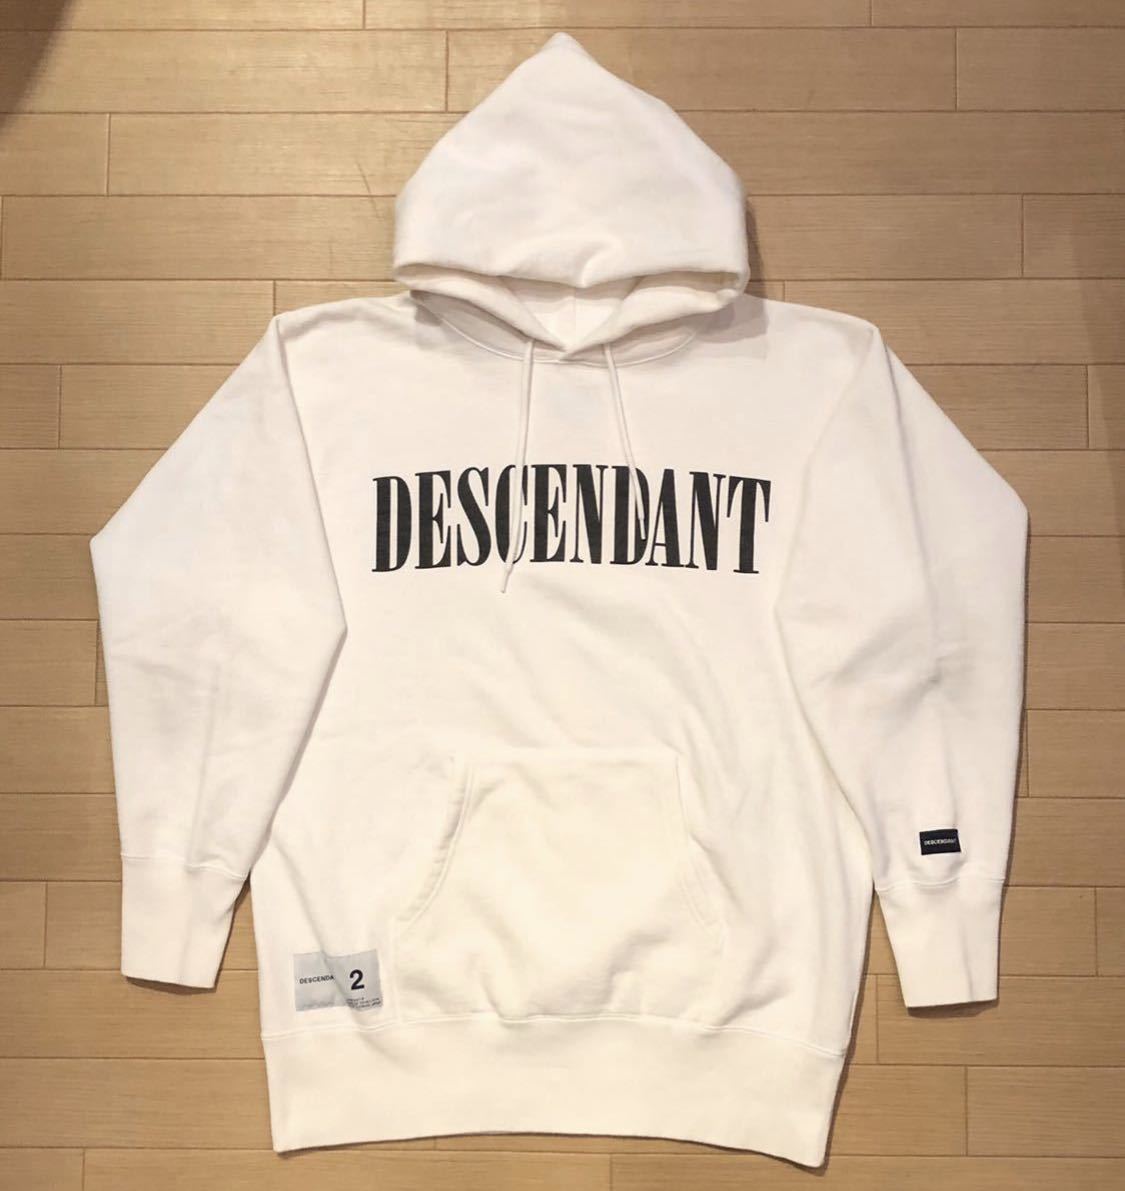 【2】Descendant Logo Hooded Sweatshirt White ディセンダント ロゴ プルオーバーパーカー ホワイト Hoodie フーディー 8444 N2